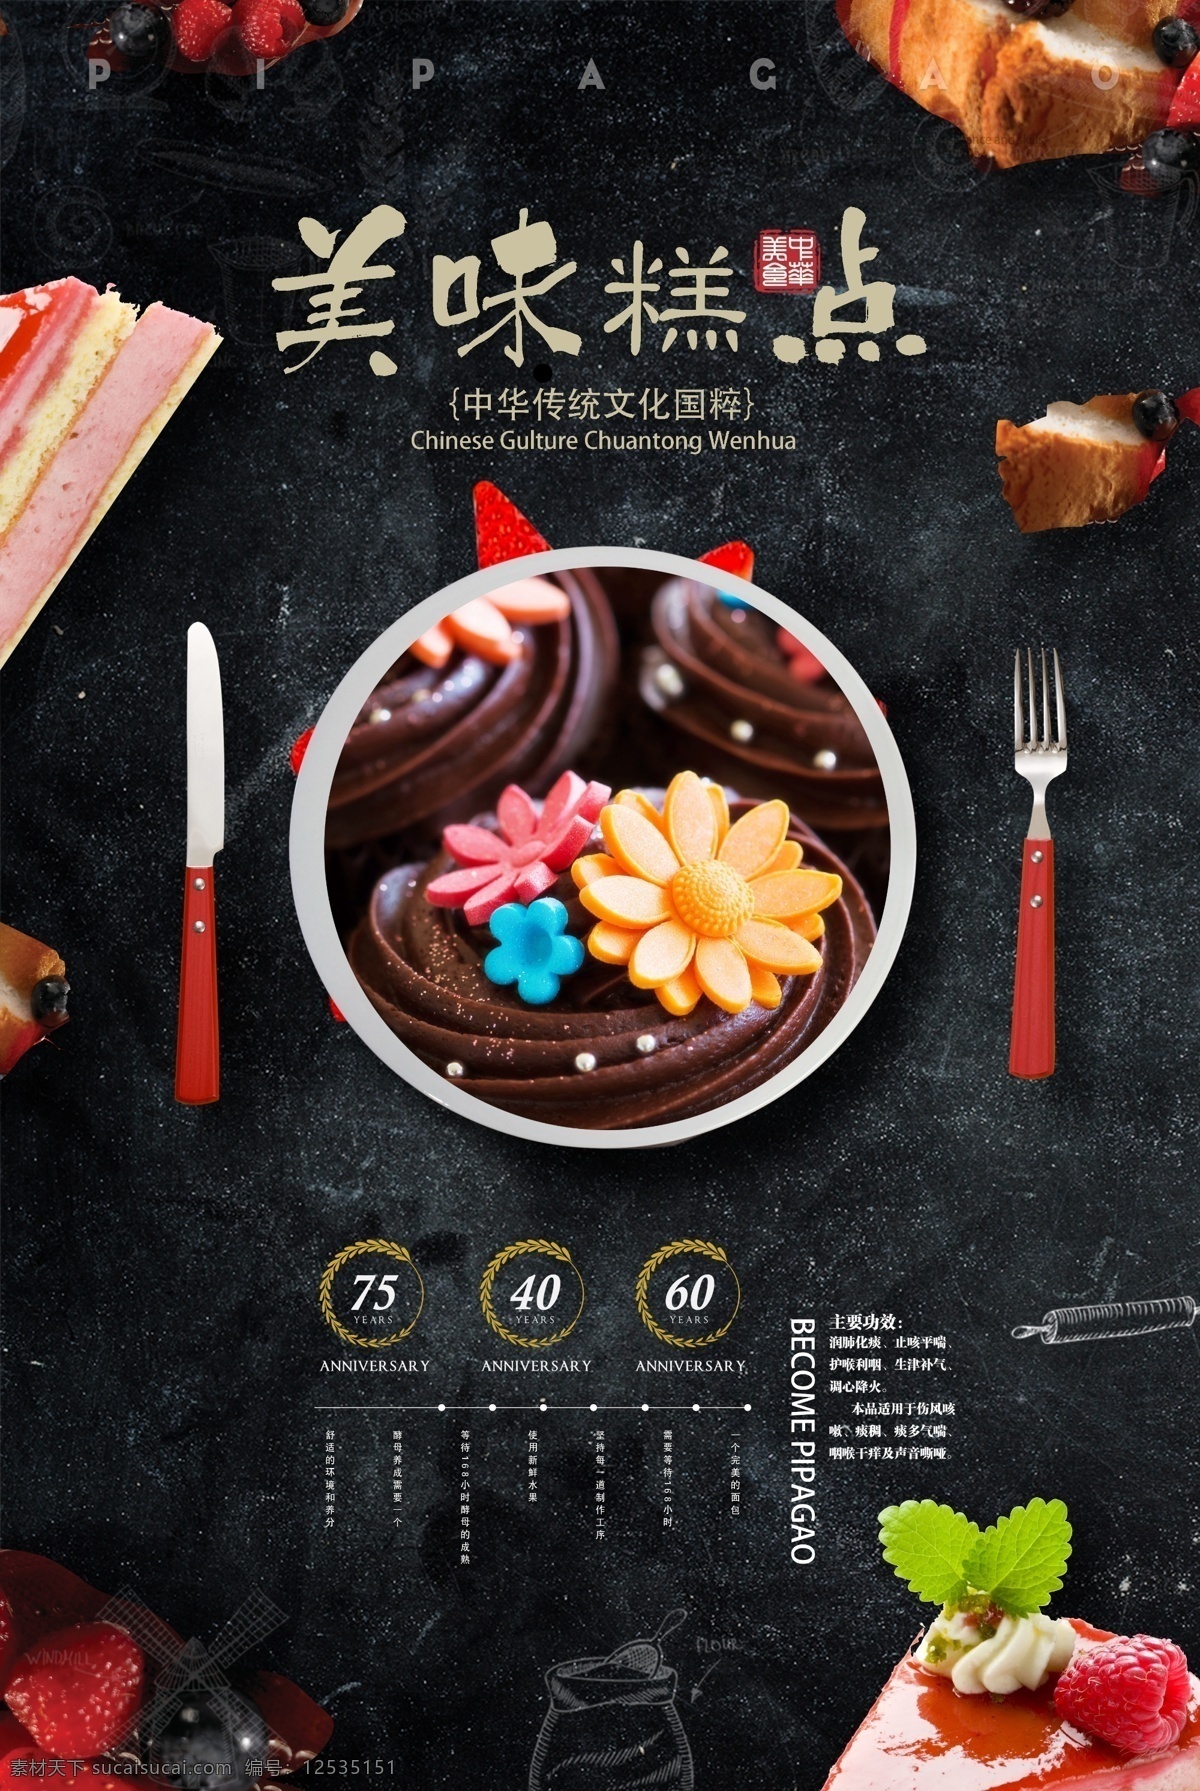 黑色 系 主题 美味 糕点 食品 美食 海报 招贴 促销海报 美食海报